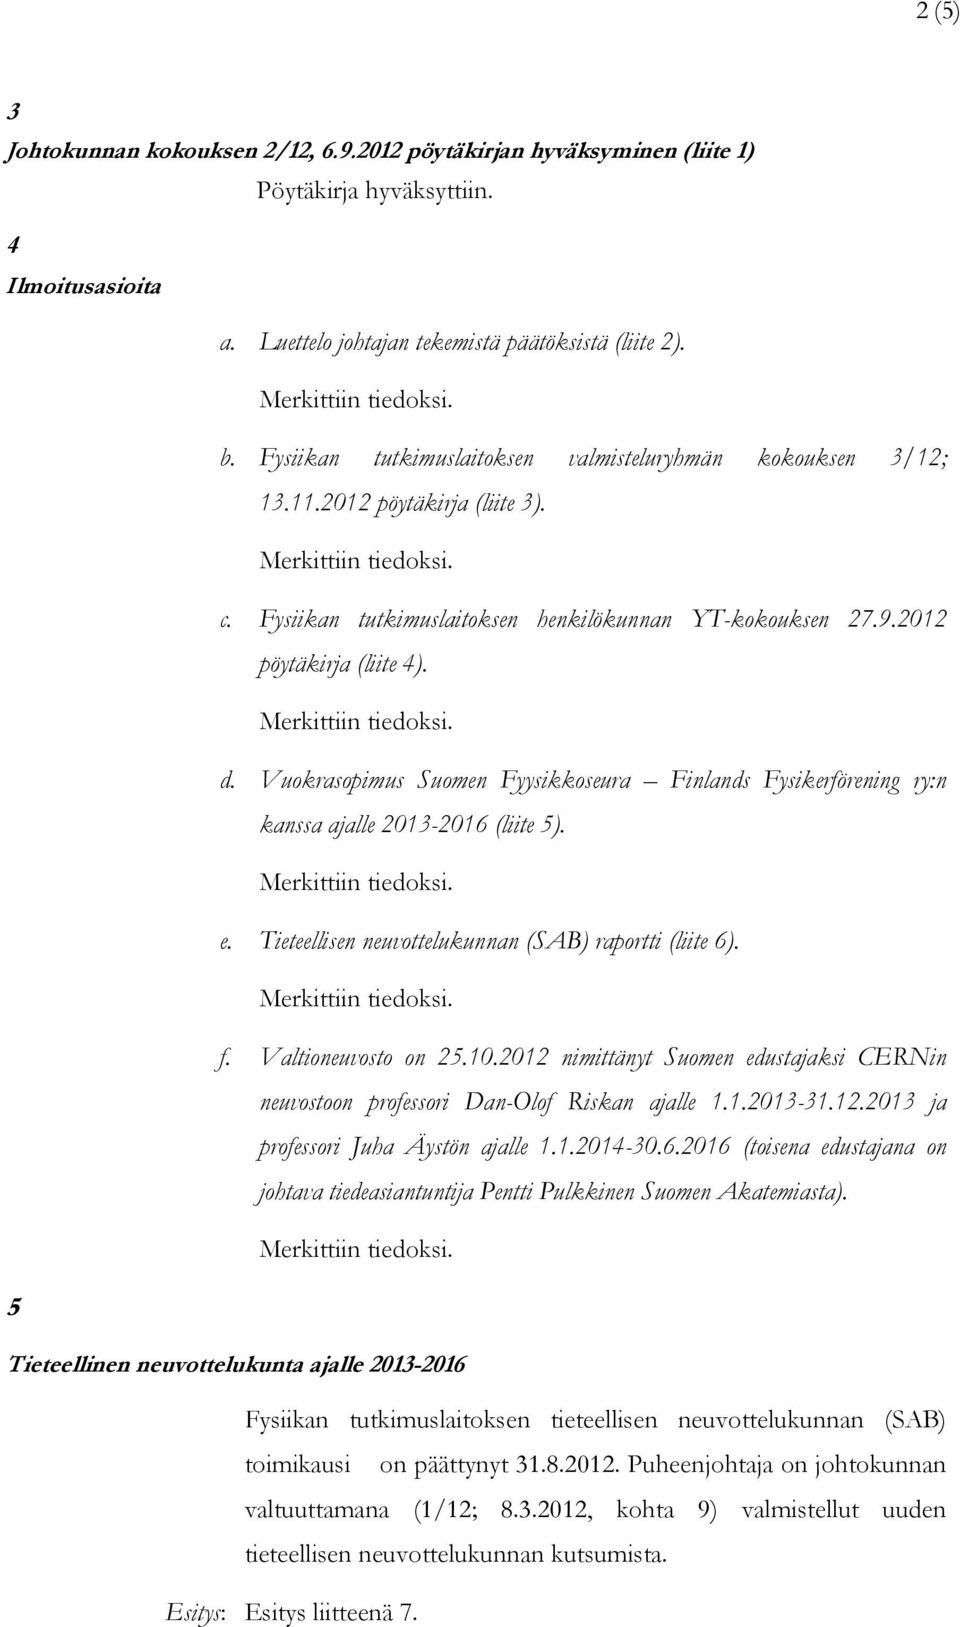 Vuokrasopimus Suomen Fyysikkoseura Finlands Fysikerförening ry:n kanssa ajalle 2013-2016 (liite 5). e. Tieteellisen neuvottelukunnan (SAB) raportti (liite 6). f. Valtioneuvosto on 25.10.